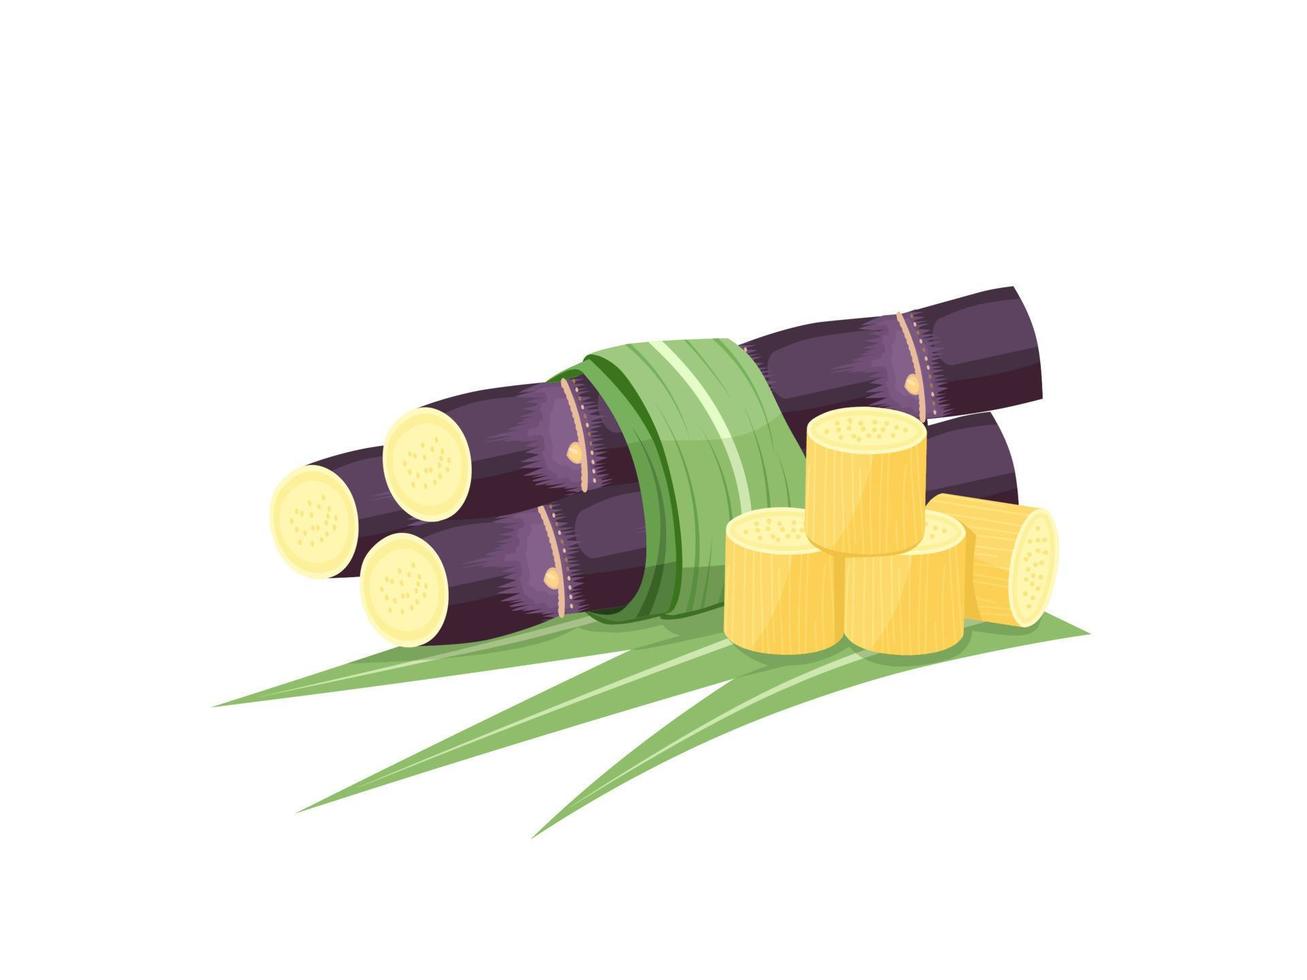 illustrazione vettoriale di canna da zucchero, isolata su sfondo bianco, adatta come etichetta di imballaggio per prodotti trasformati di canna da zucchero.